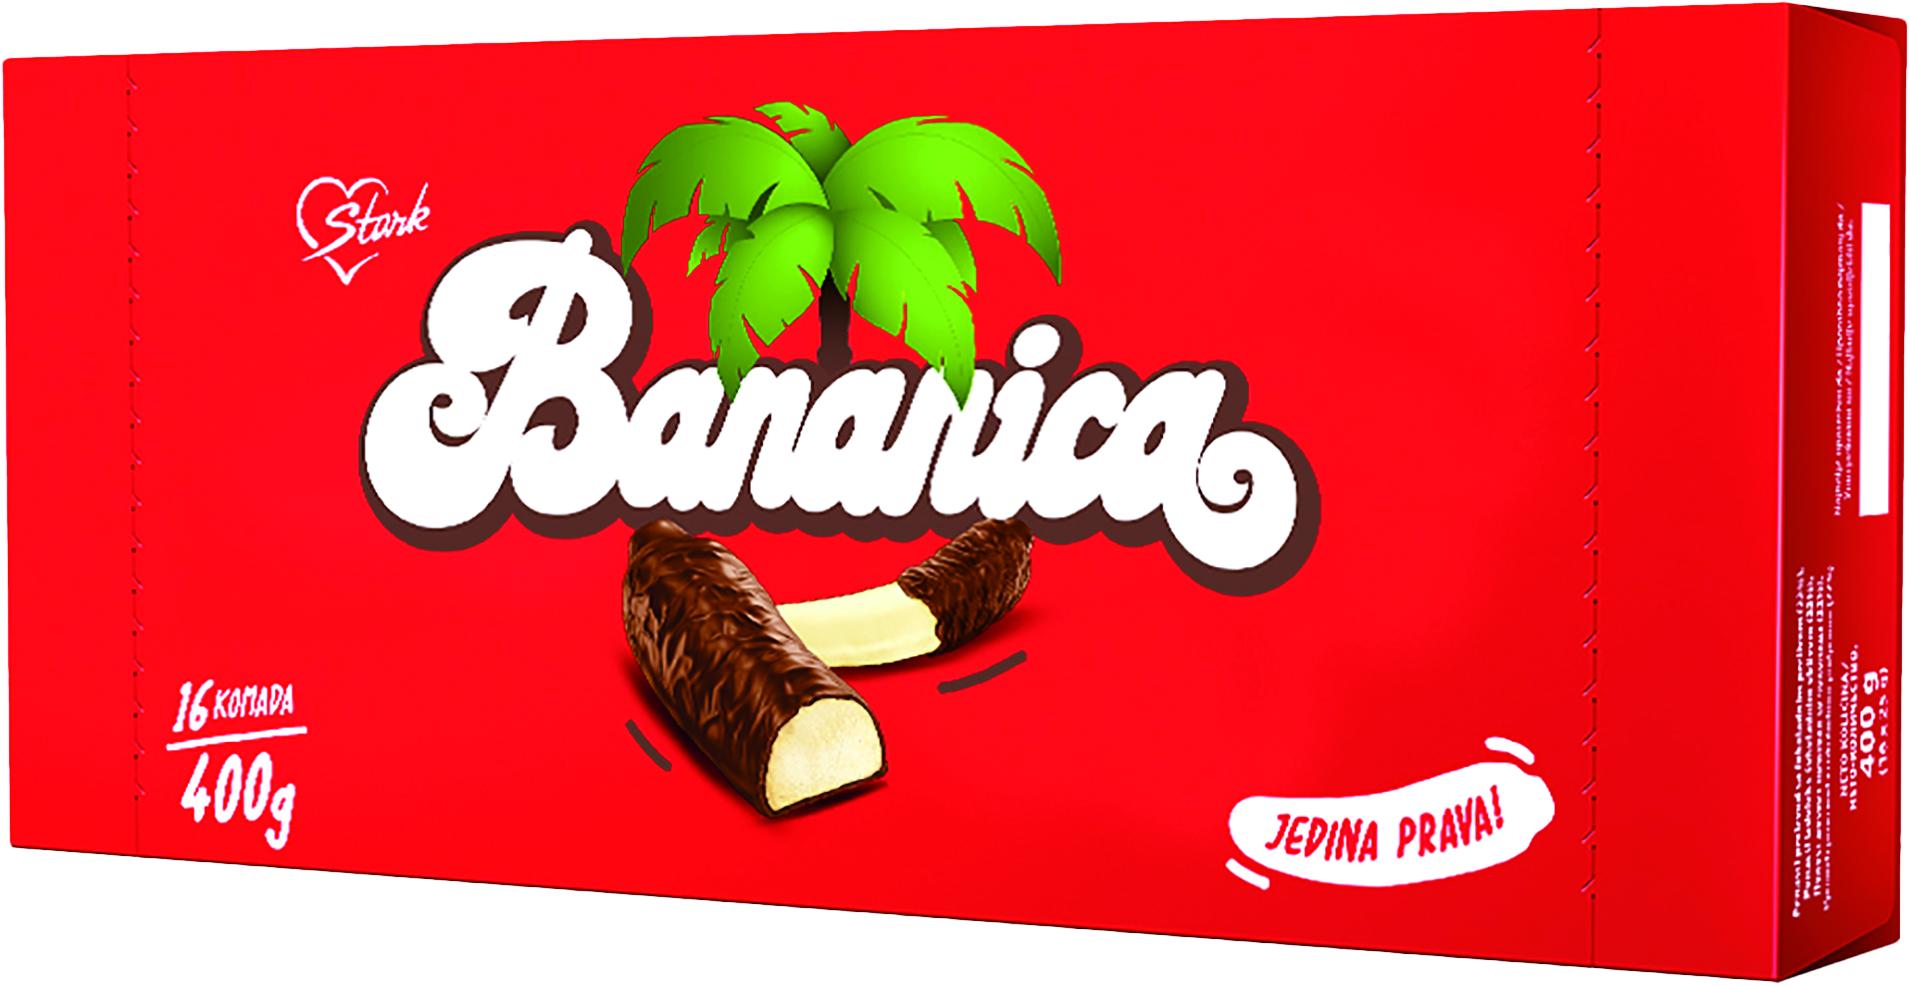 Slika za Čokoladna bananica Štark 400g